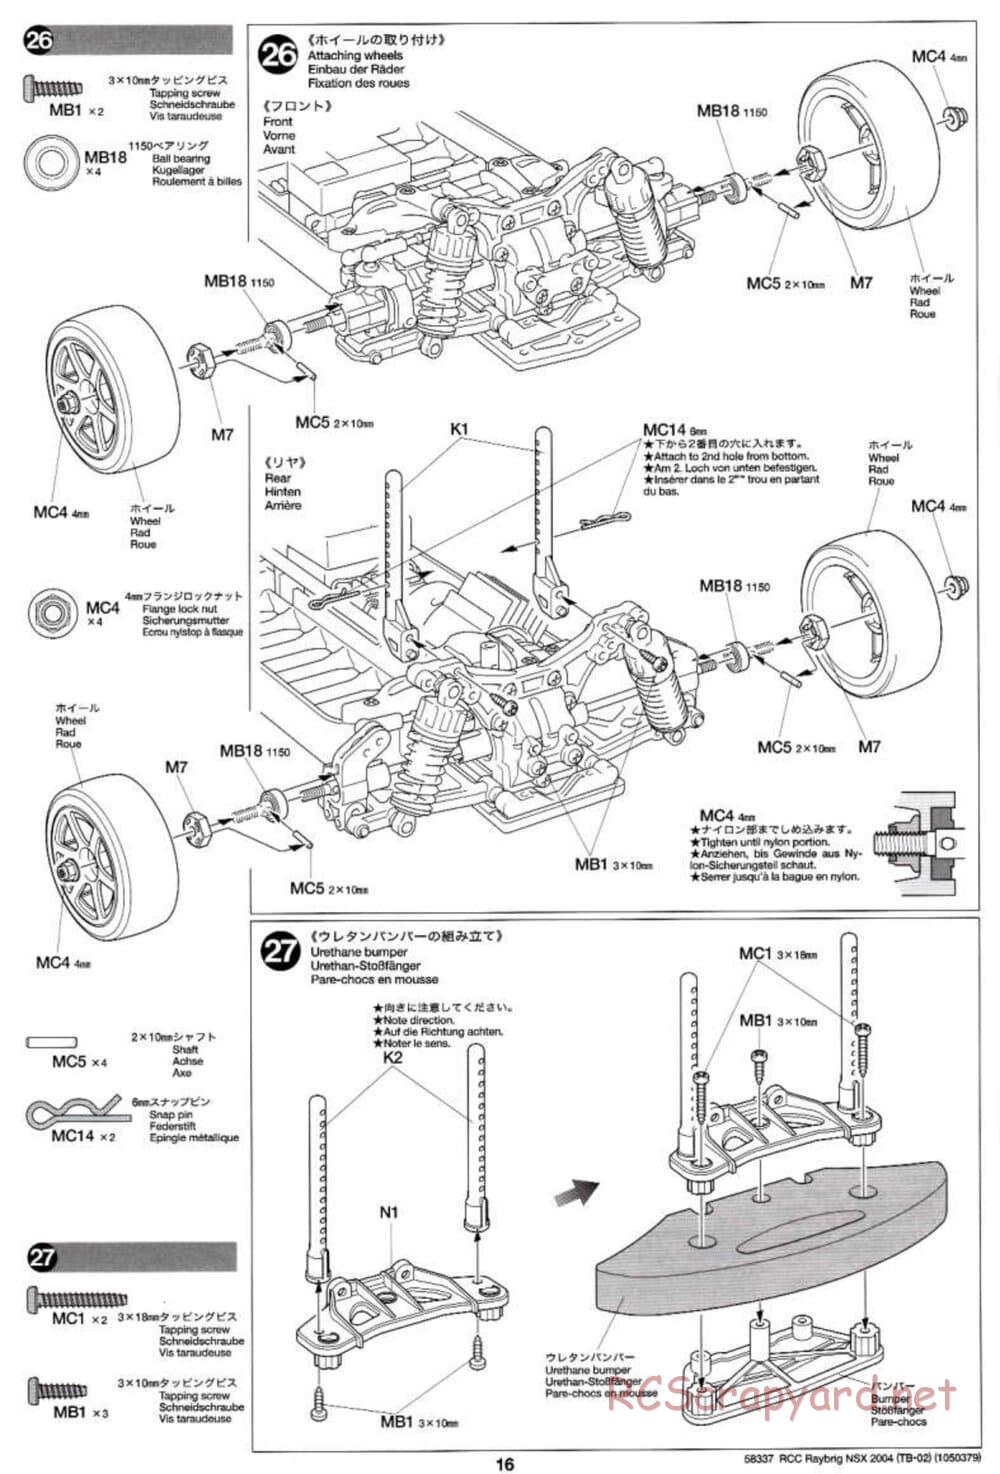 Tamiya - Raybrig NSX 2004 - TB-02 Chassis - Manual - Page 16